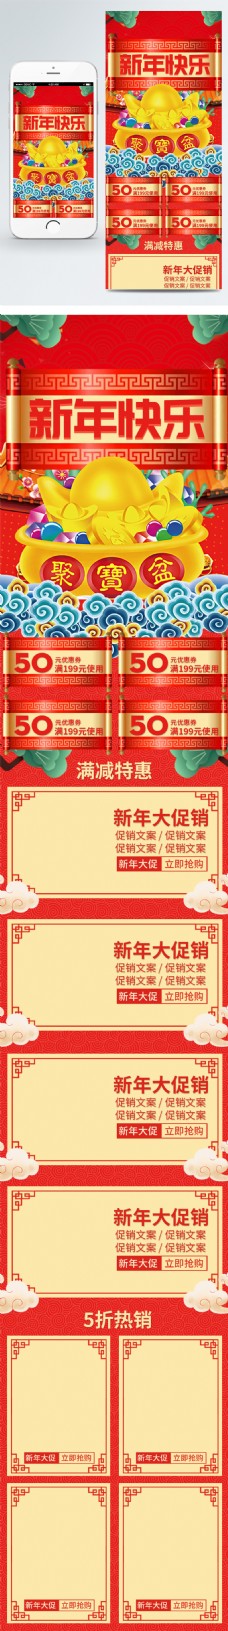 大优惠中国红2018新年春节优惠大促销手机首页